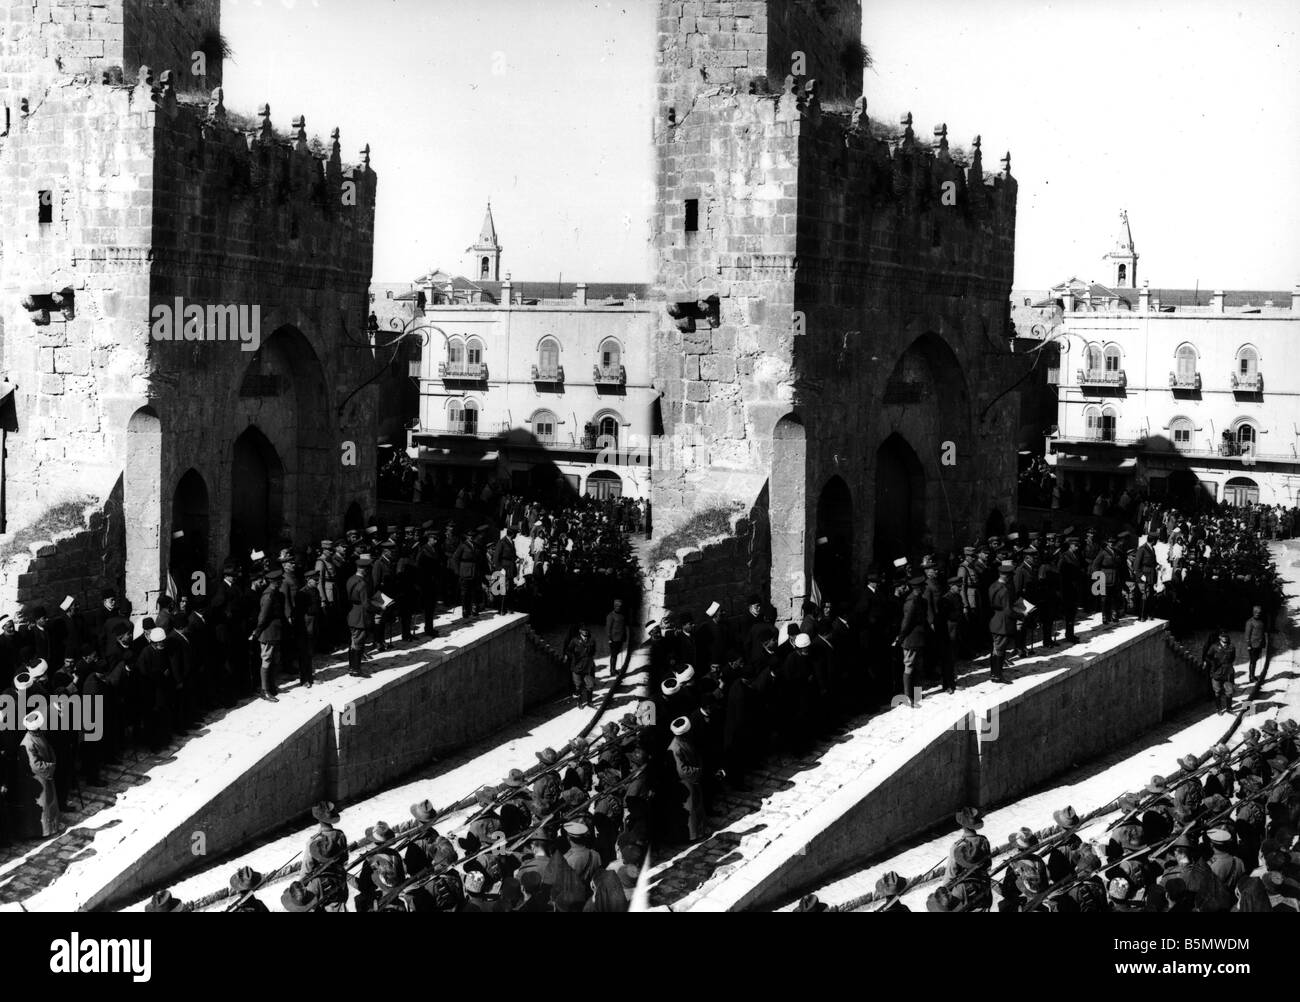 9IS 1917 12 9 A1 3 E WW1 erfassen von Jerusalem durch Großbritannien 1. Weltkrieg türkische britischen Schlachten erfassen von Jerusalem durch britische Tro Stockfoto